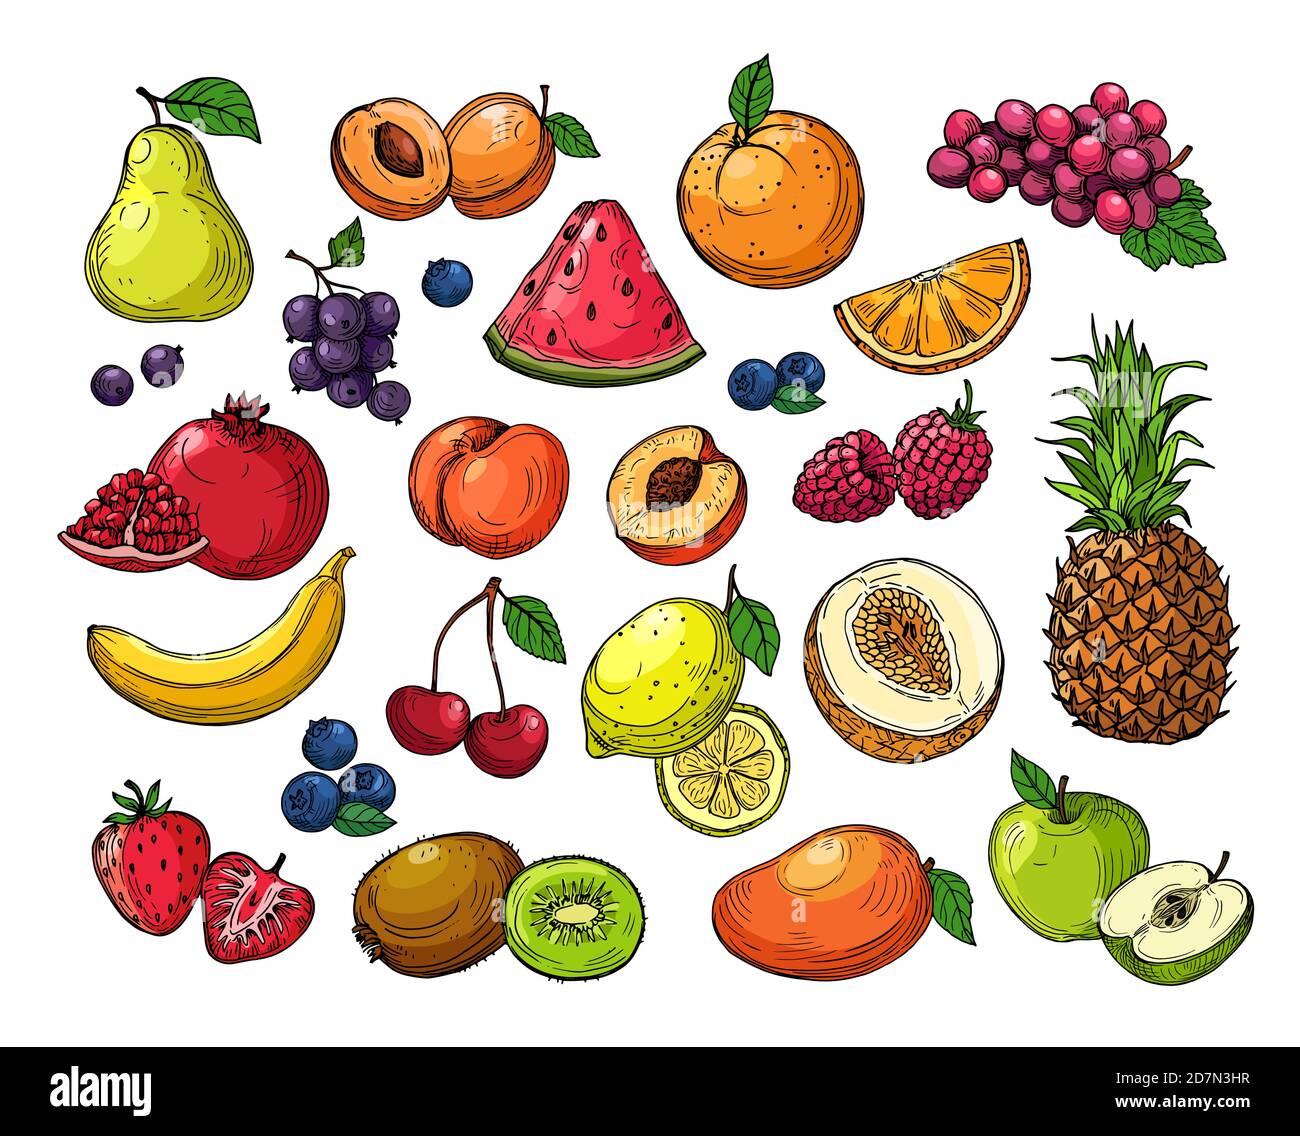 Baies de dessins animés et fruits. Raisins d'ananas, pomme de poire, orange mangue, kiwi de melon, citron de banane. Ensemble vectoriel isolé. Illustration de la pastèque et de la fraise, fruits juteux Illustration de Vecteur